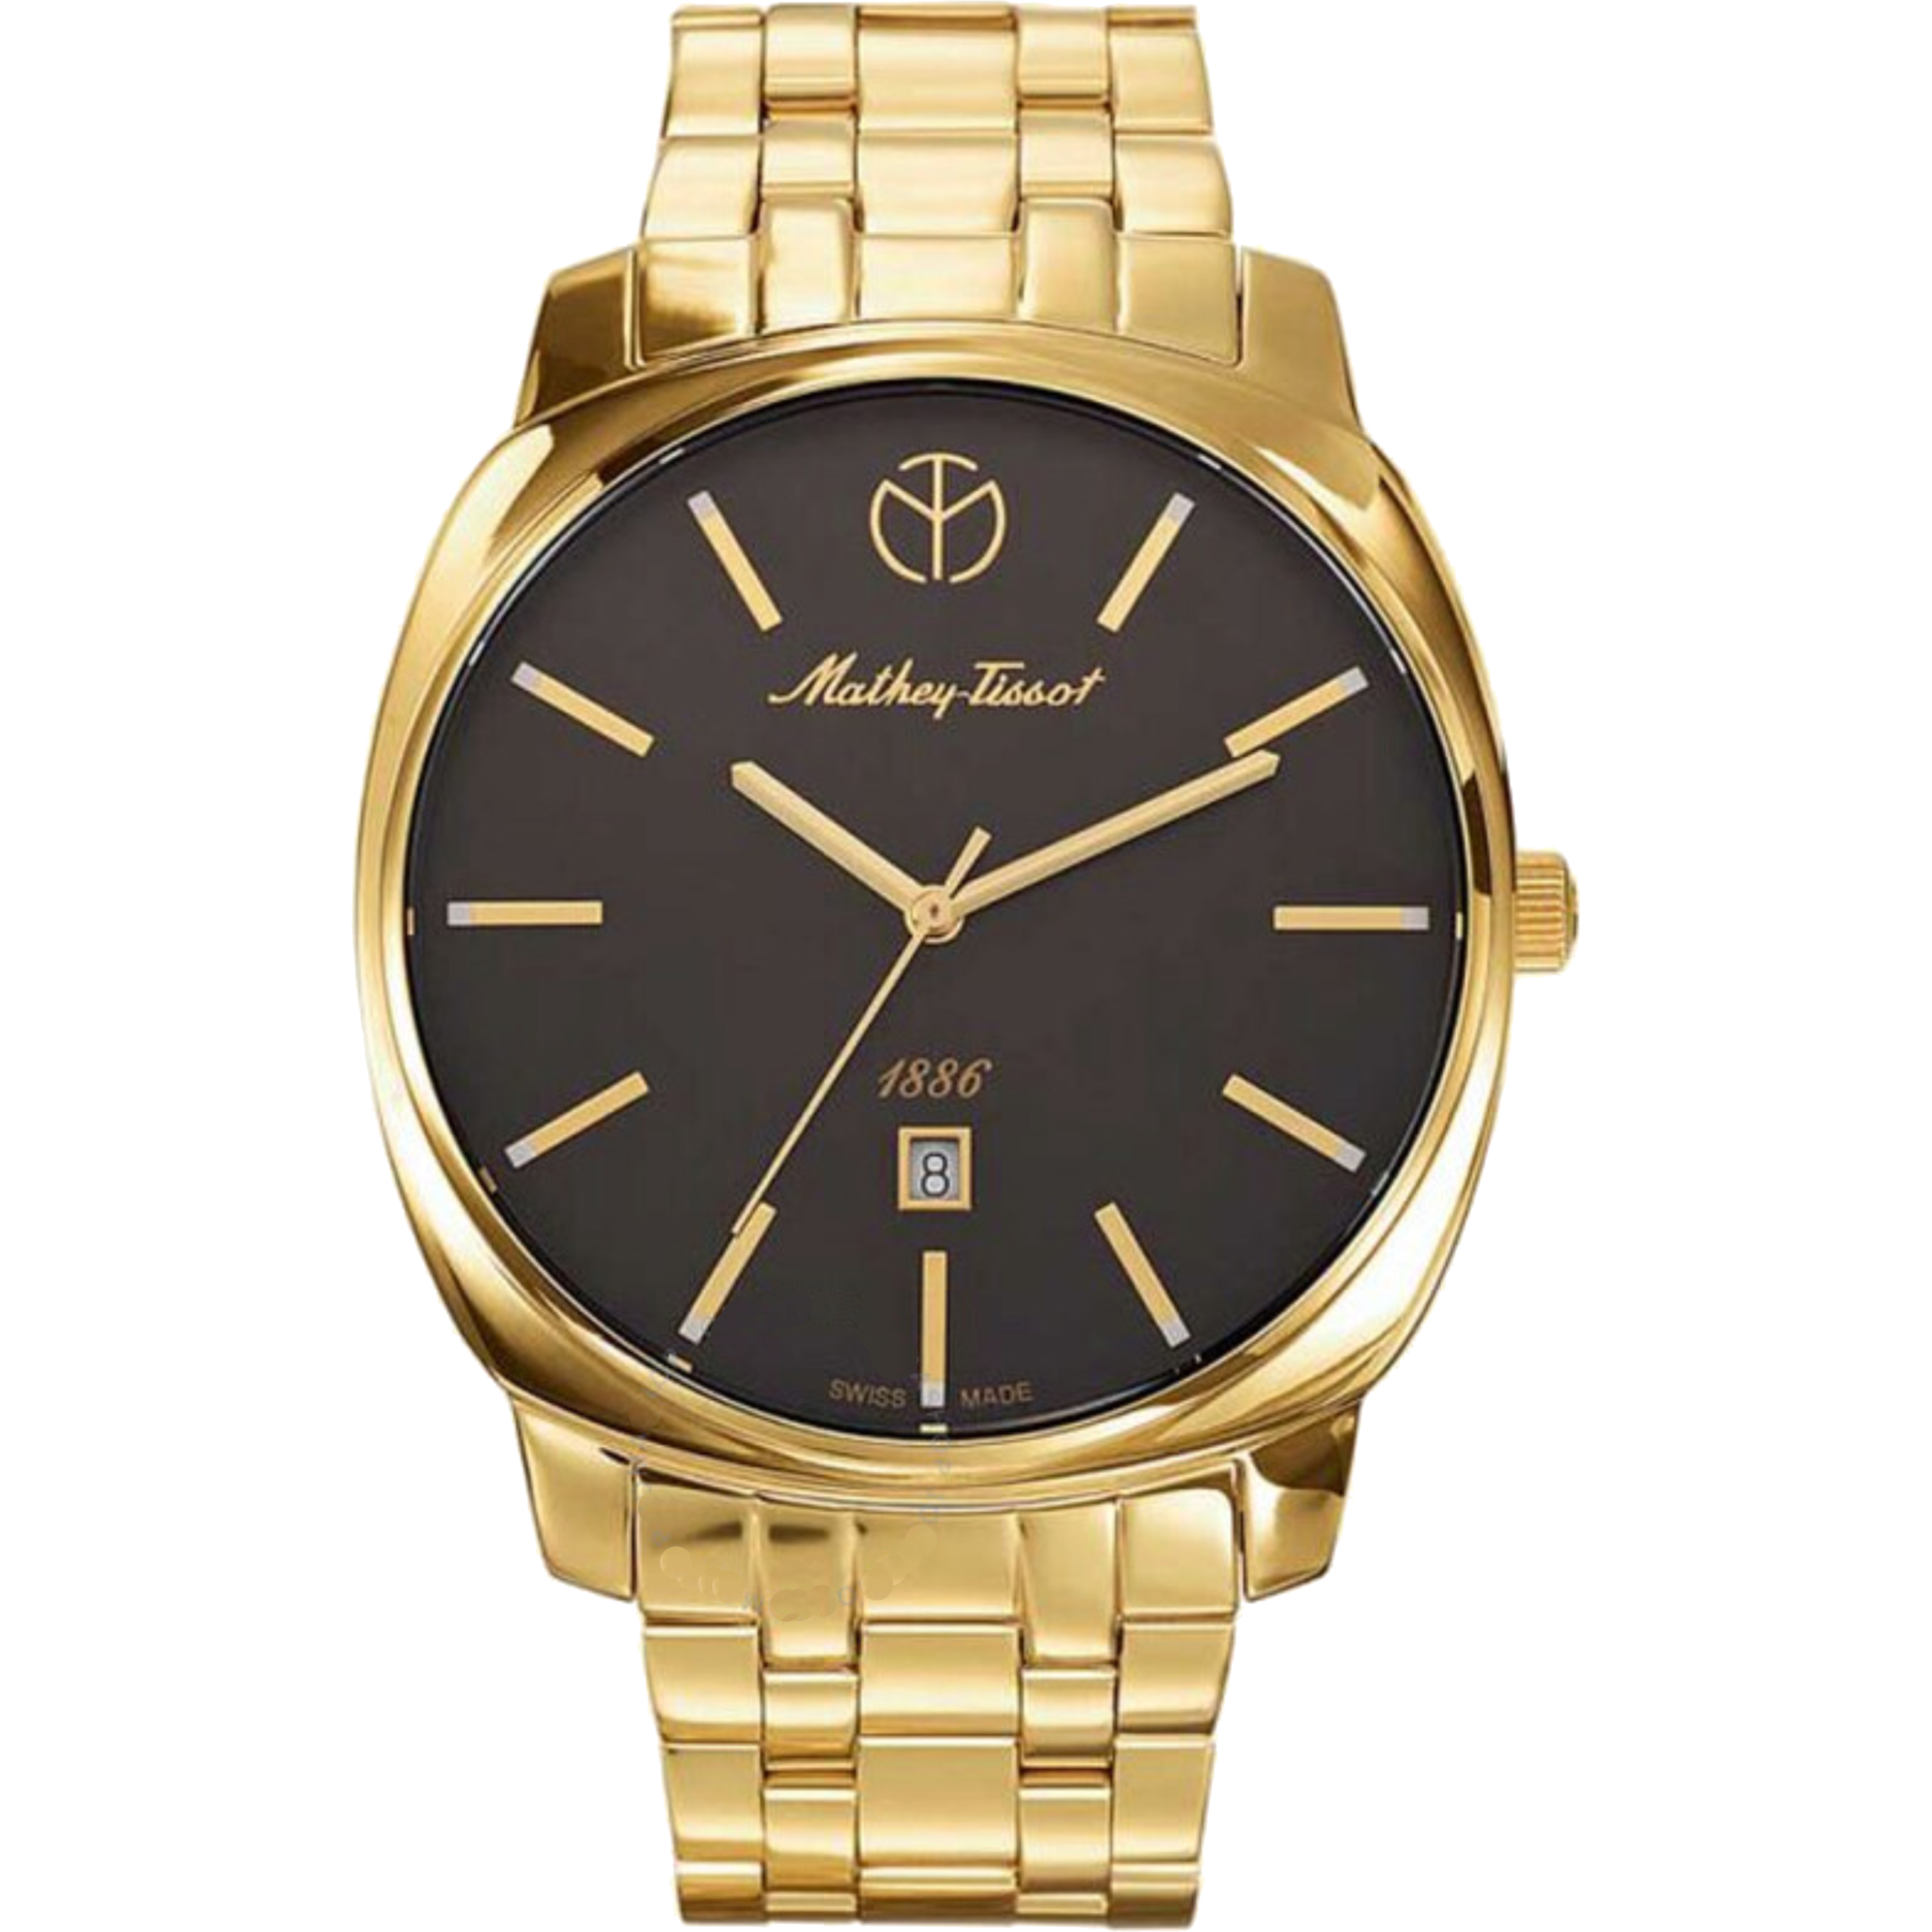 שעון יד לגבר Mathey Tissot H6940MPN 42mm צבע זהב/שחור/זכוכית ספיר - אחריות לשנה ע"י היבואן